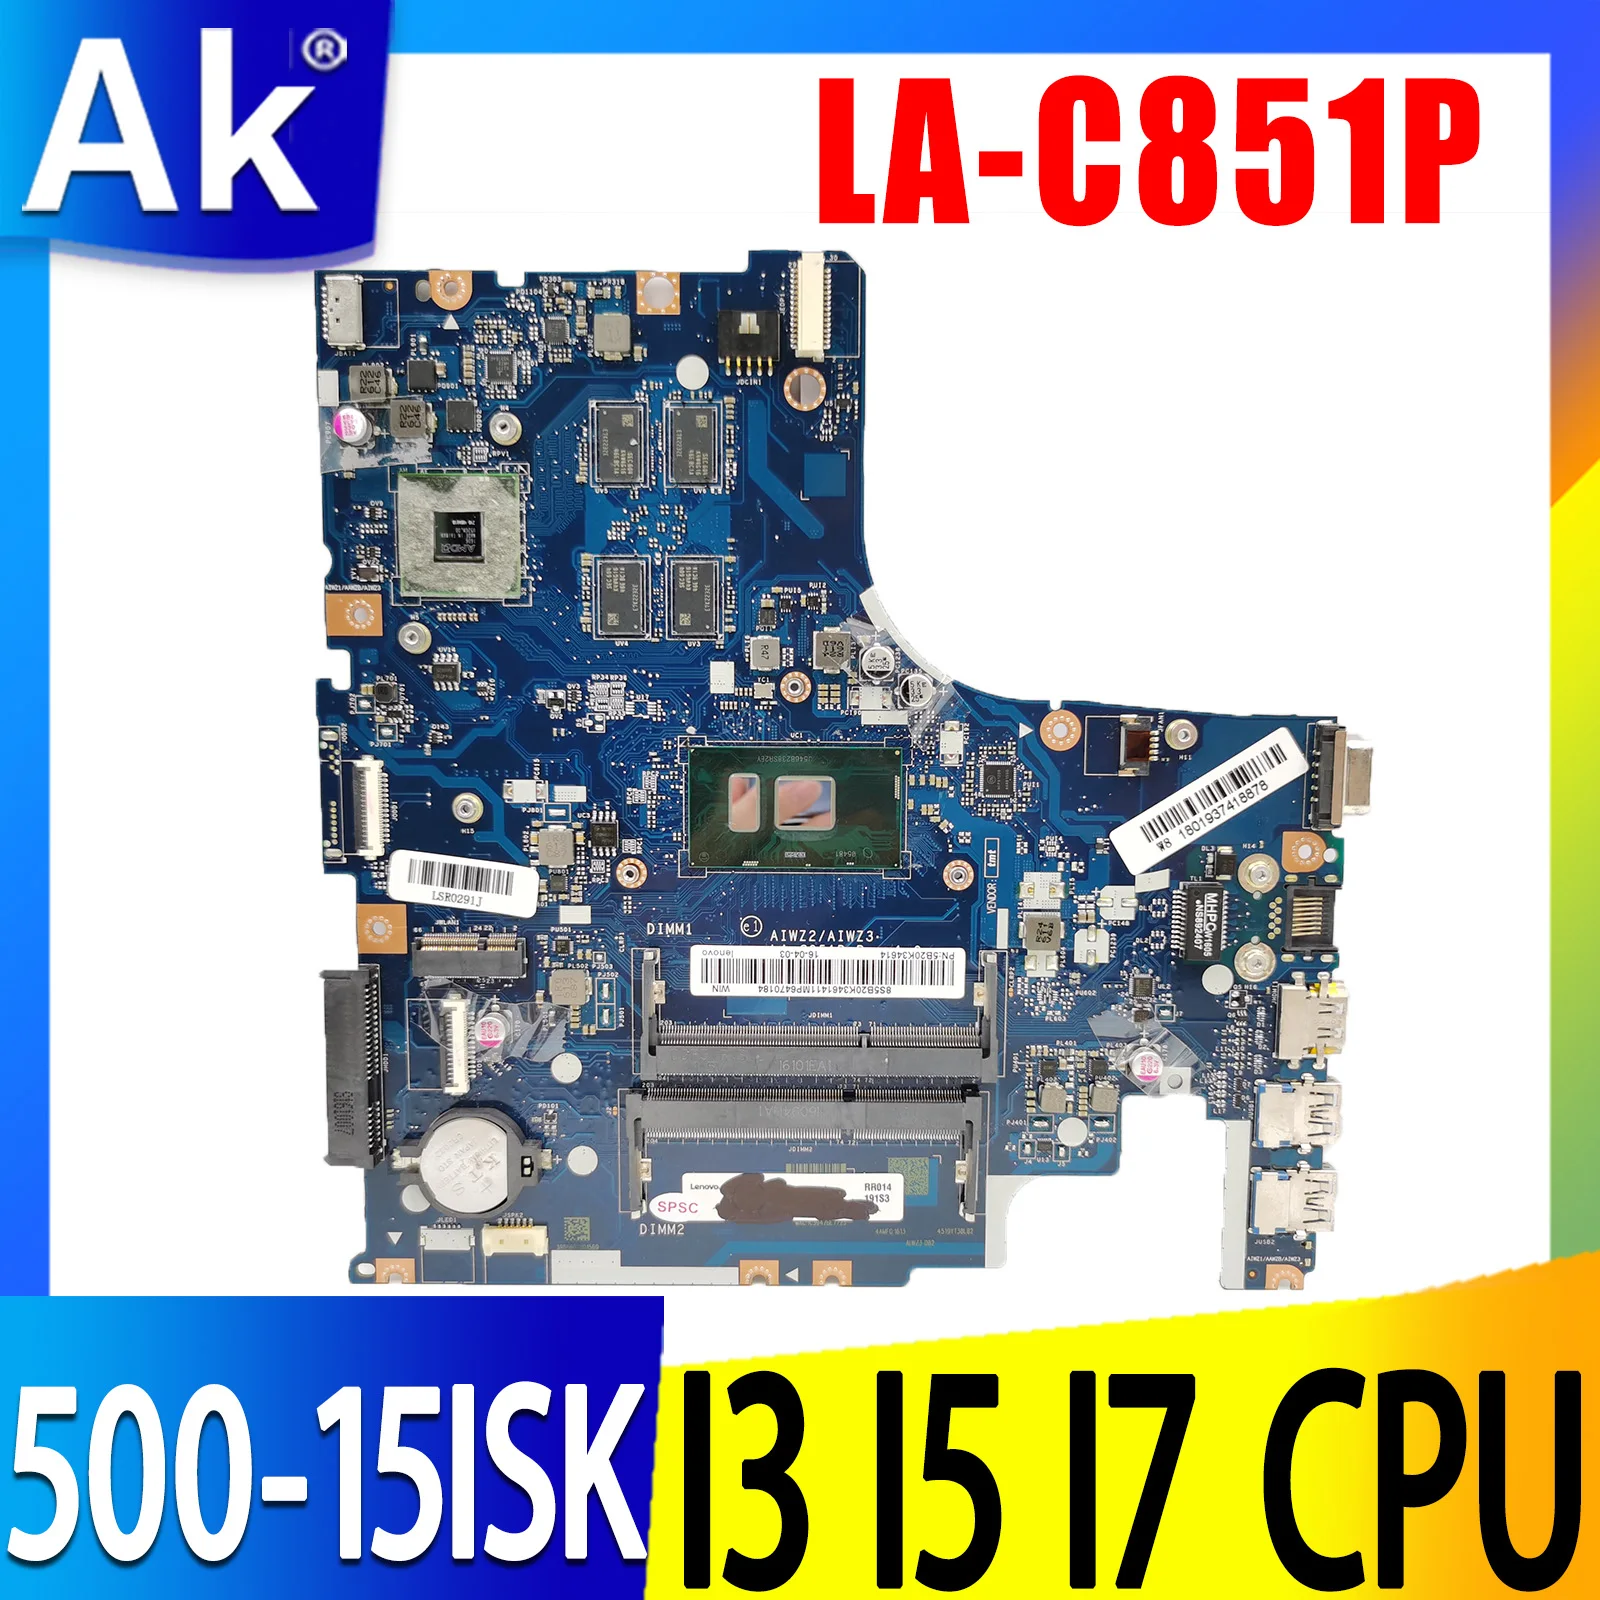 

LA-C851P Motherboard For Lenovo 500-15ISK Laptop Motherboard Mainboard CPU I3-6100U I5-6200U I7-6500U R7 M360 2G DDR3